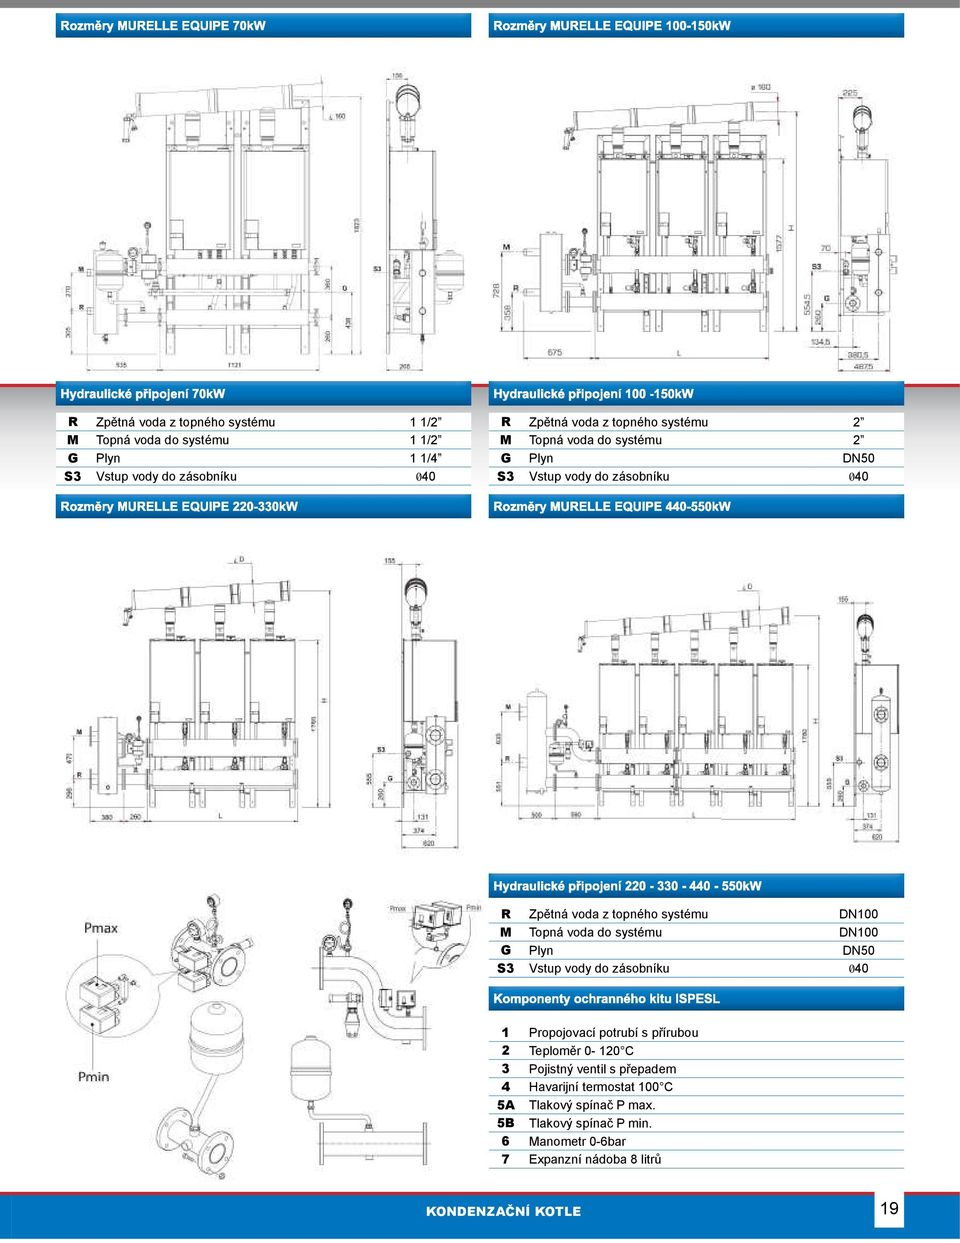 systému DN100 G Plyn DN50 S3 Vstup vody do zásobníku 040 1 Propojovací potrubí s přírubou 2 Teploměr 0-120 C 3 Pojistný ventil s přepadem